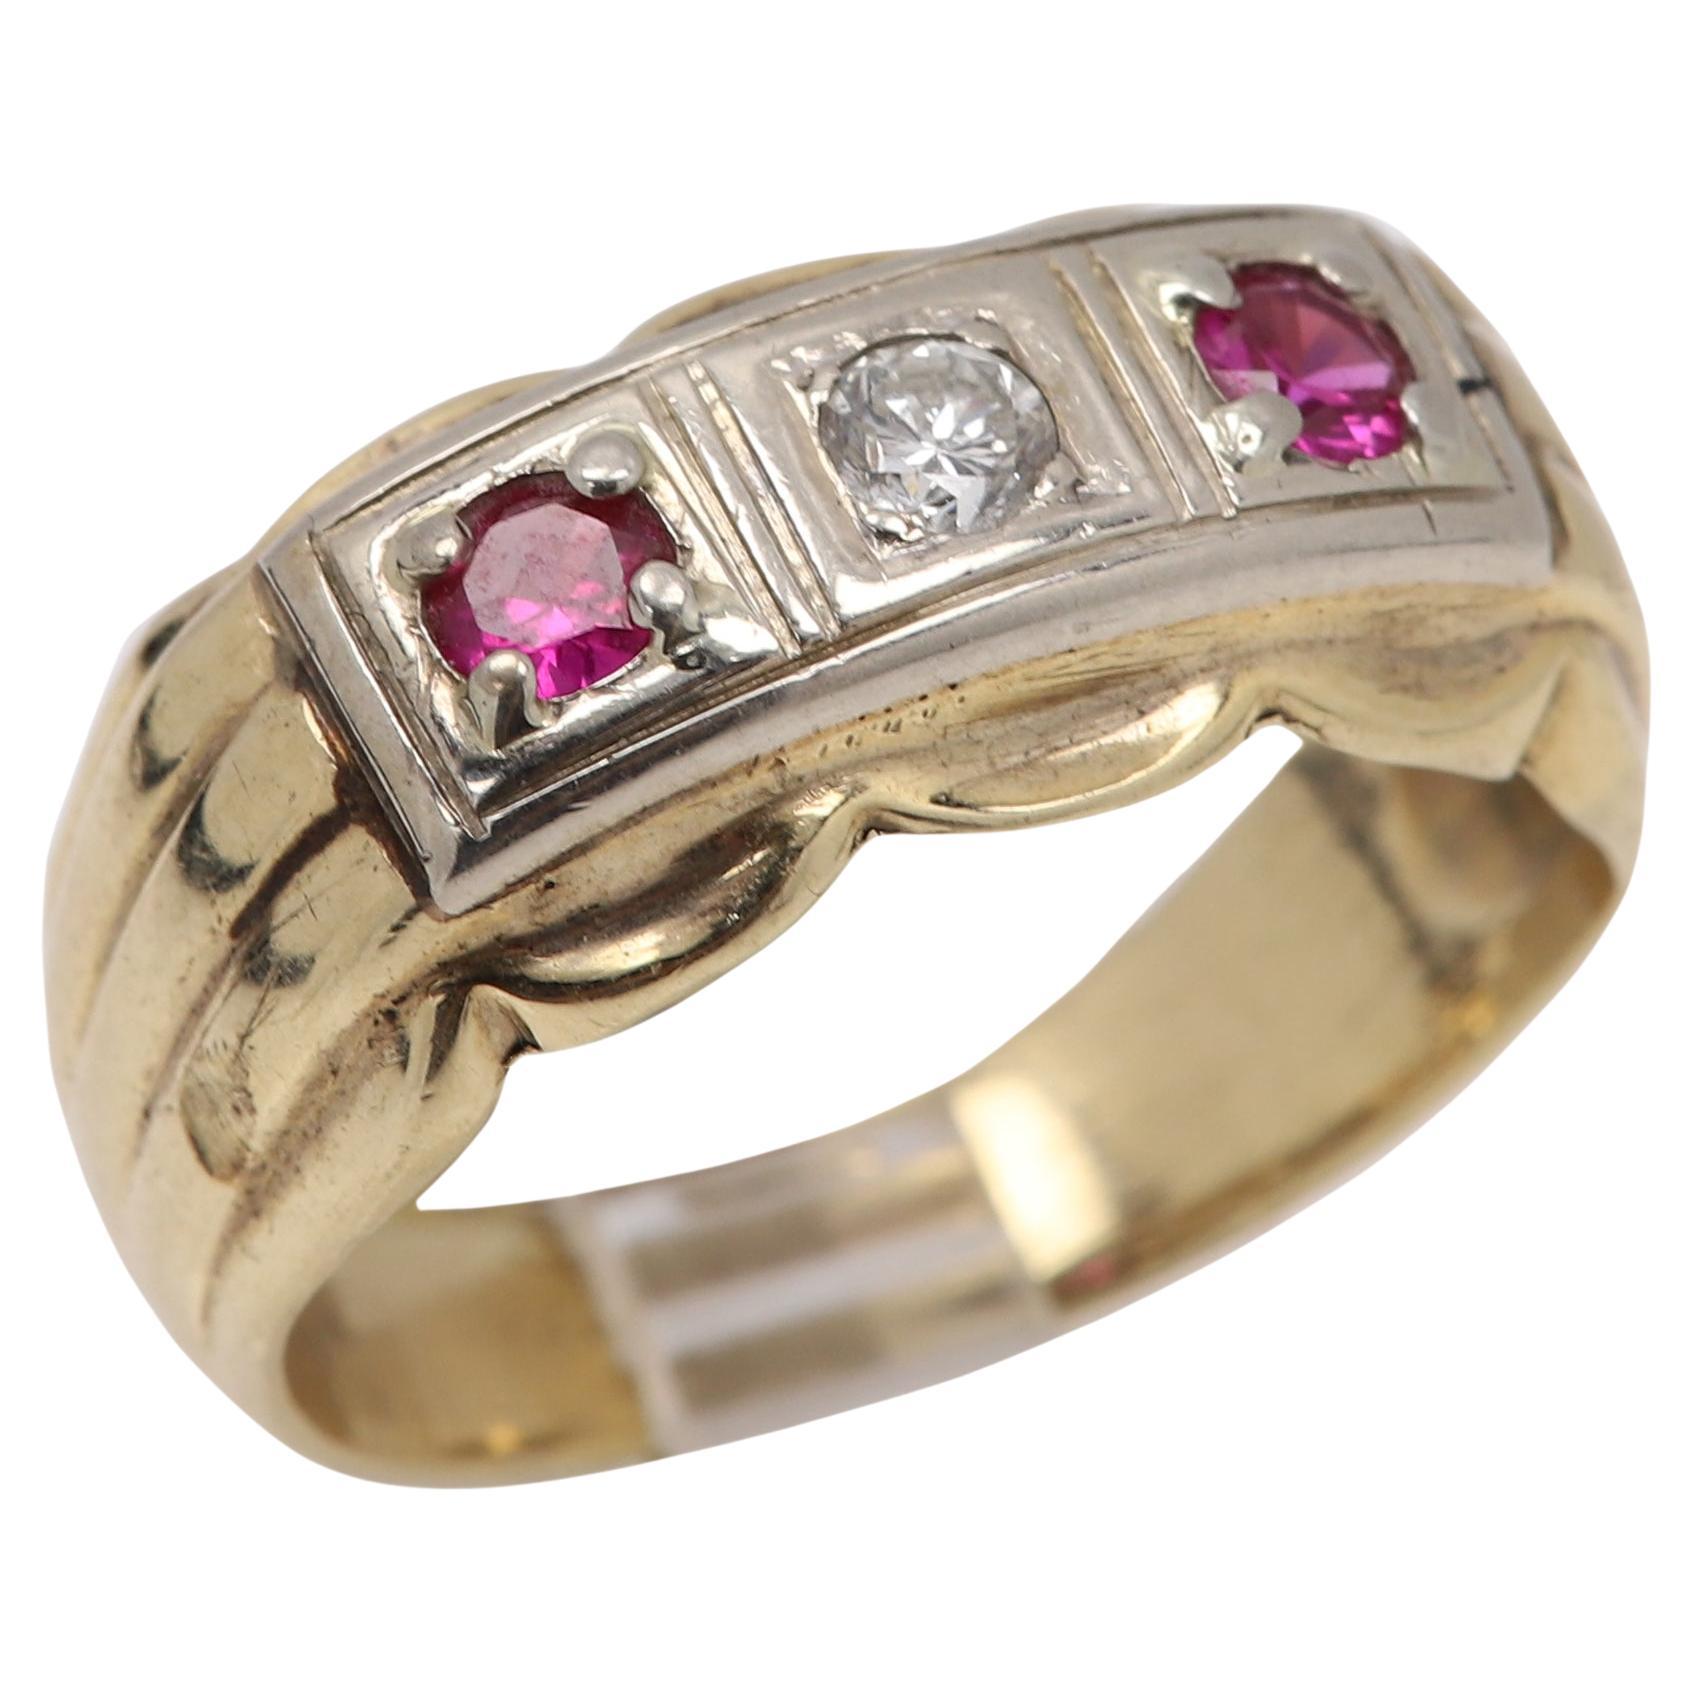 Vintage Men's 3 Stone Ring 14 Karat Yellow White Gold Ruby Diamond circa 1940's